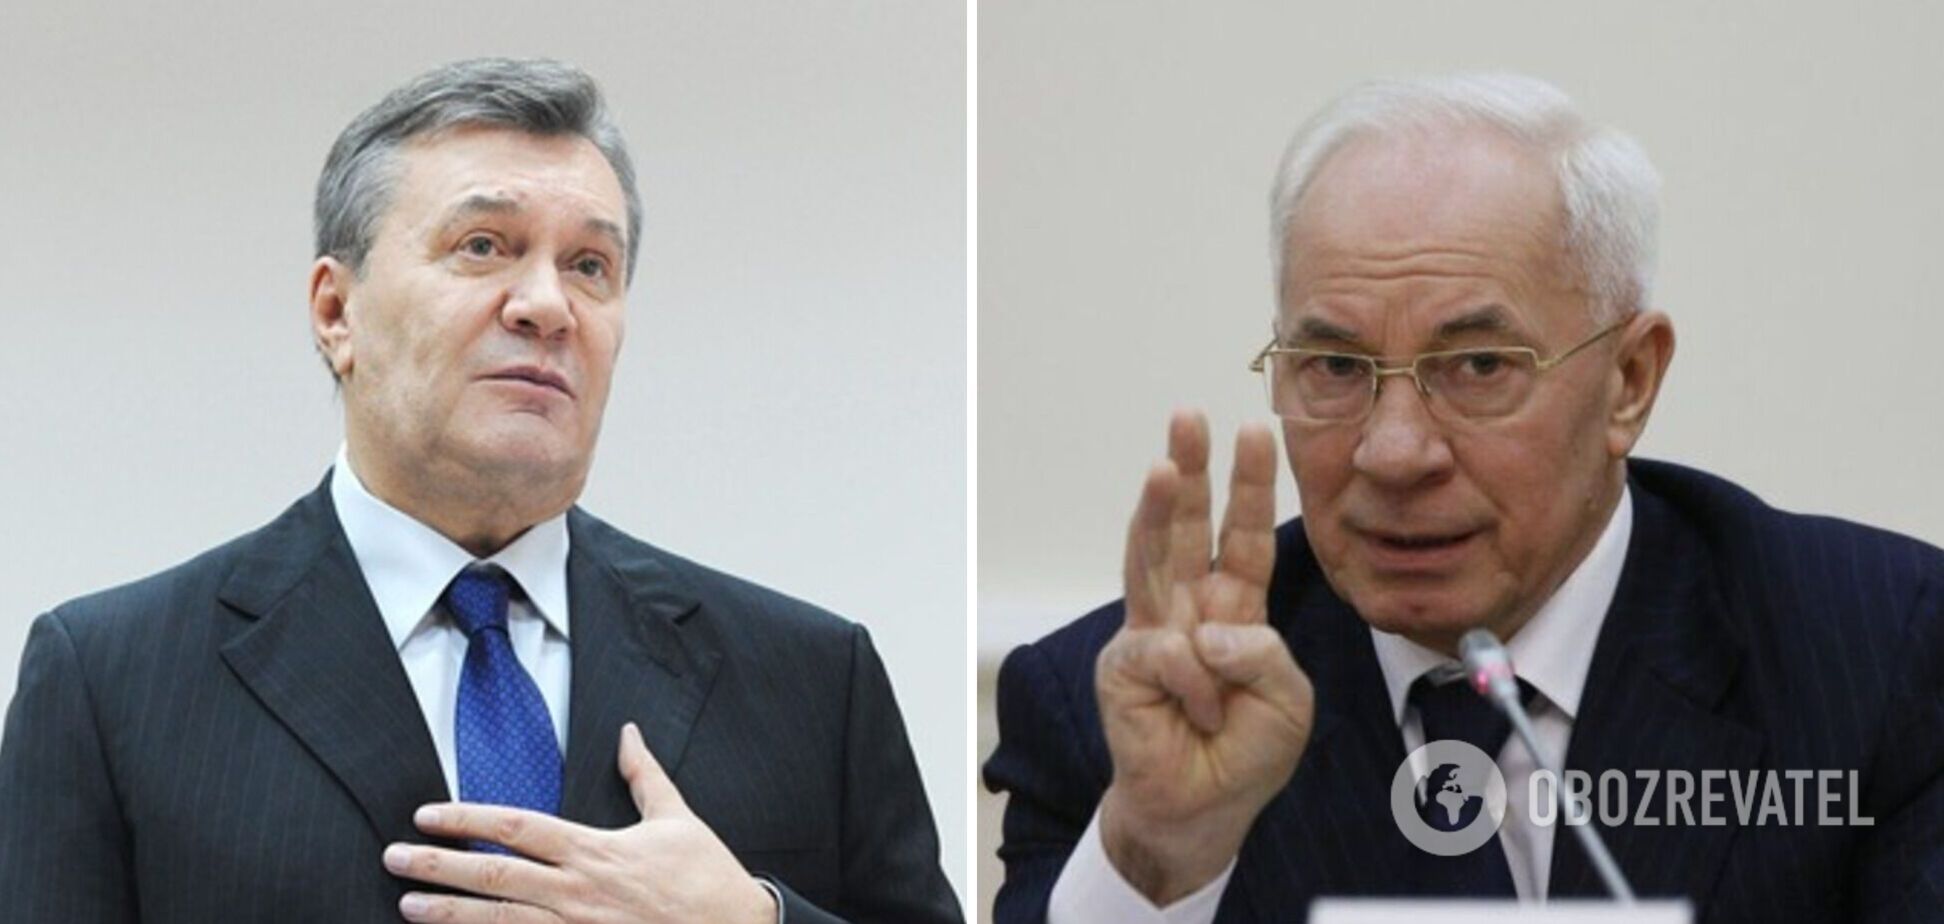 ДБР завершило розслідування щодо держзради Януковича та Азарова, які підготували 'Харківські угоди'